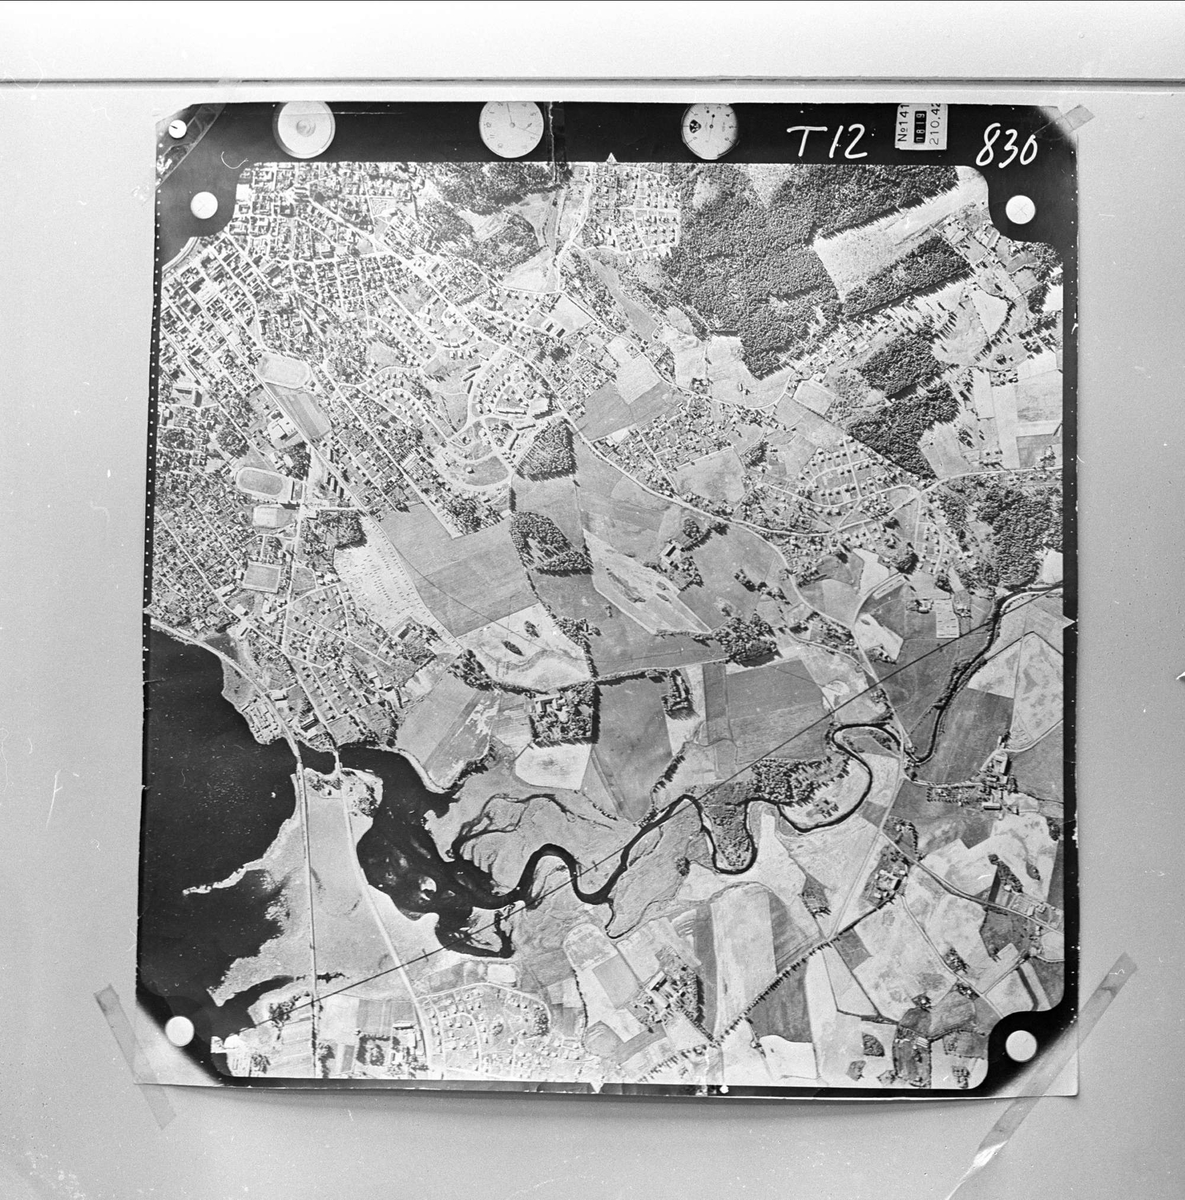 Div. glimt fra Hamar i forbindelse med NM på skøyter, 15.01.1963. Avfotografering av bykart.